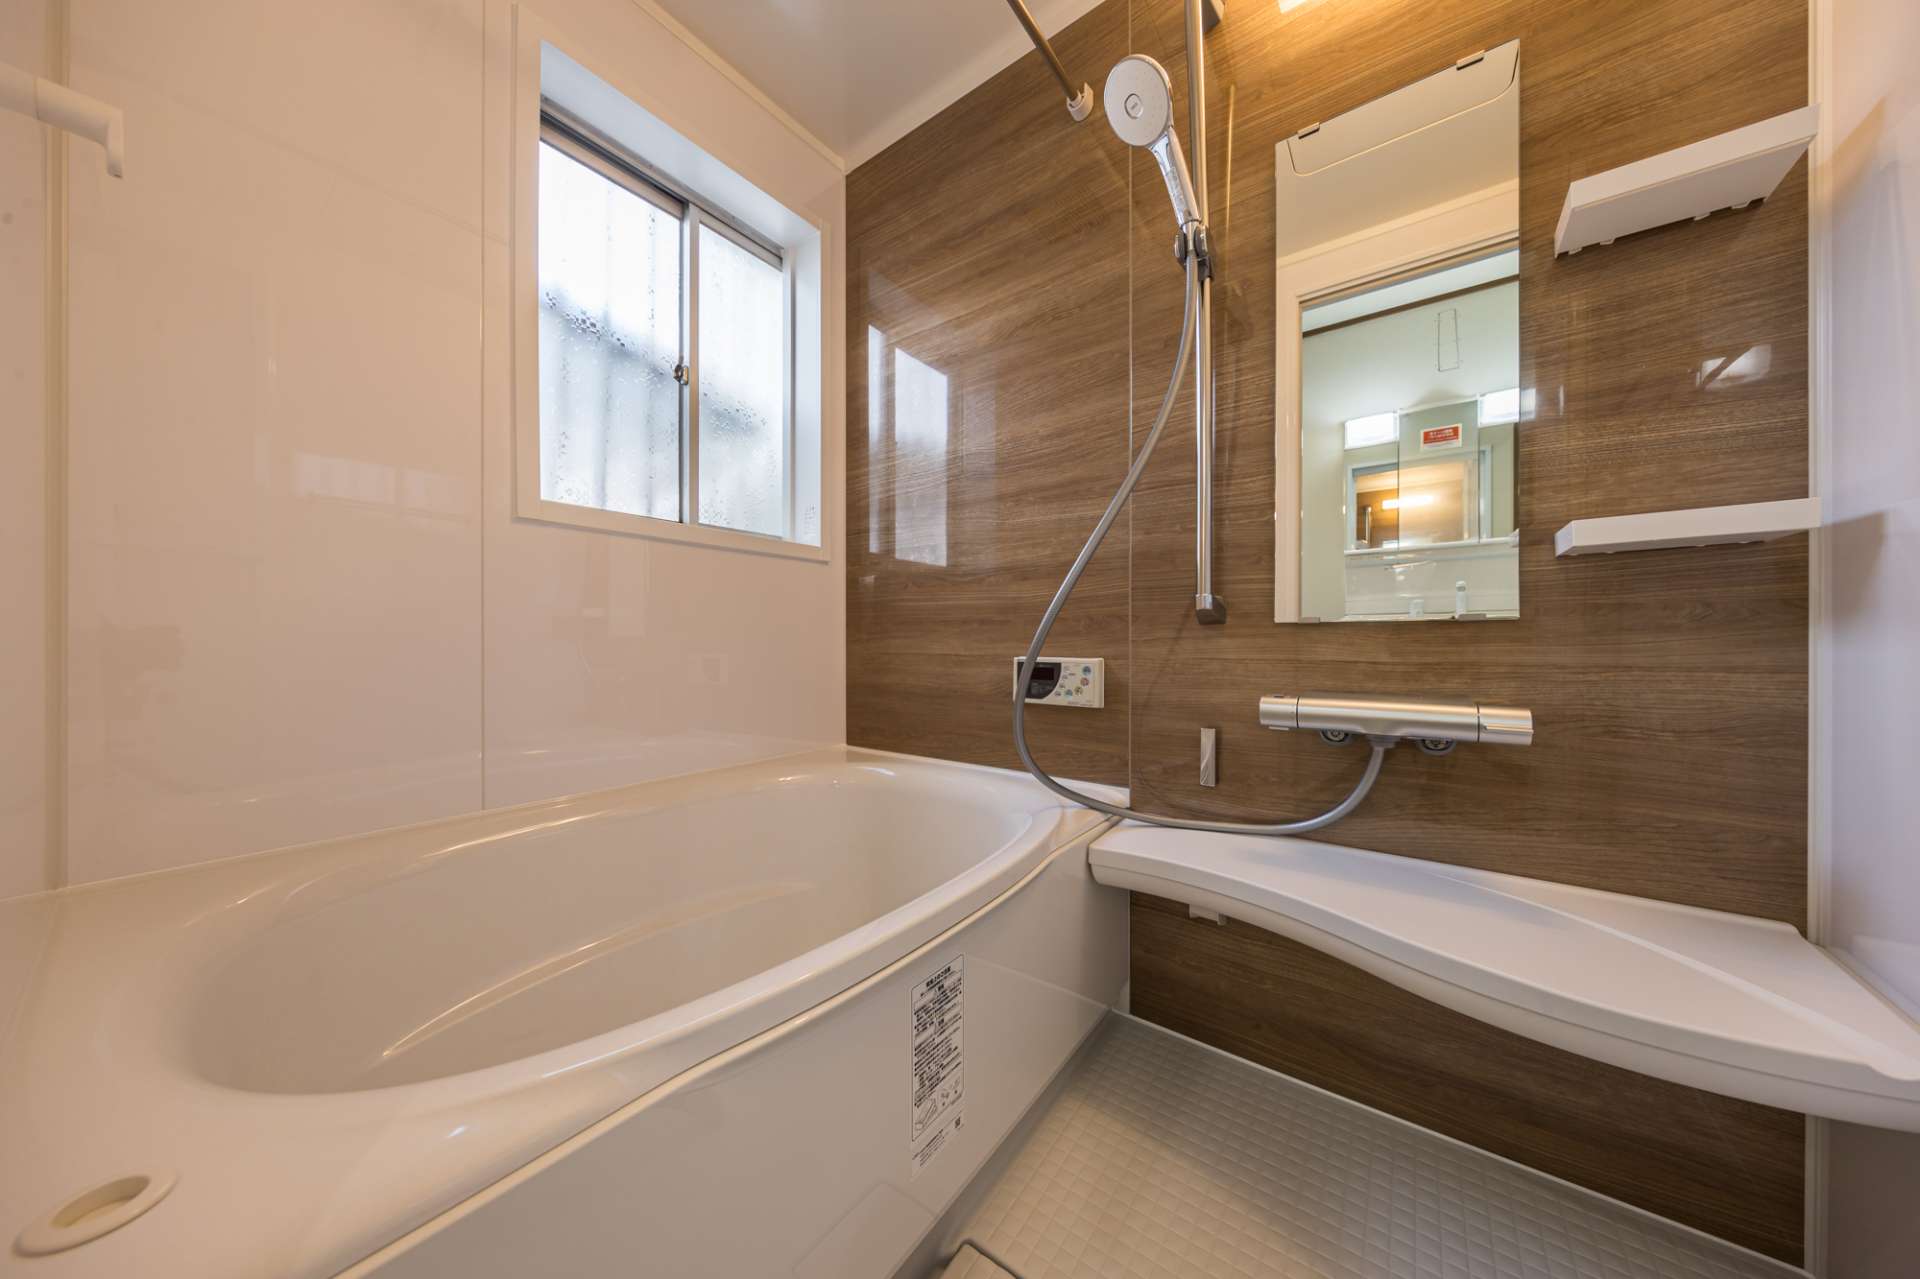 神戸市のリフォーム会社ユーユーフォームが神戸市北区でリフォームした浴室の施工例